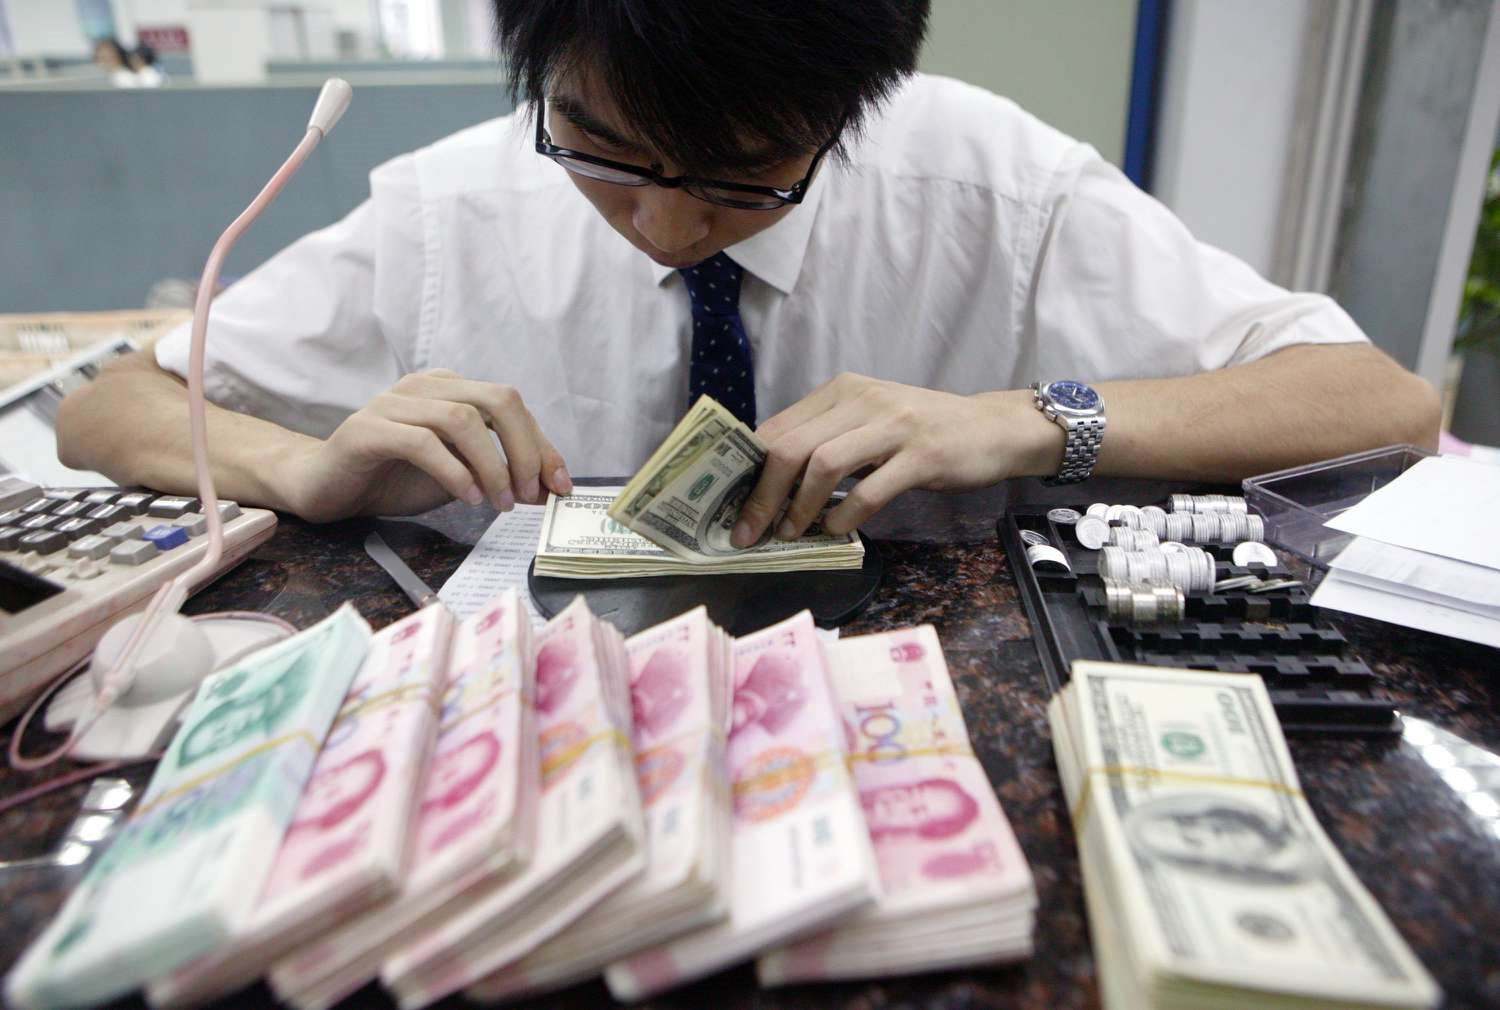 Nhà băng hàng đầu Trung Quốc bất ngờ áp hạn chế với các ngân hàng Nga, Bắc Kinh liệu có 'xoay trục'? - Ảnh 2.